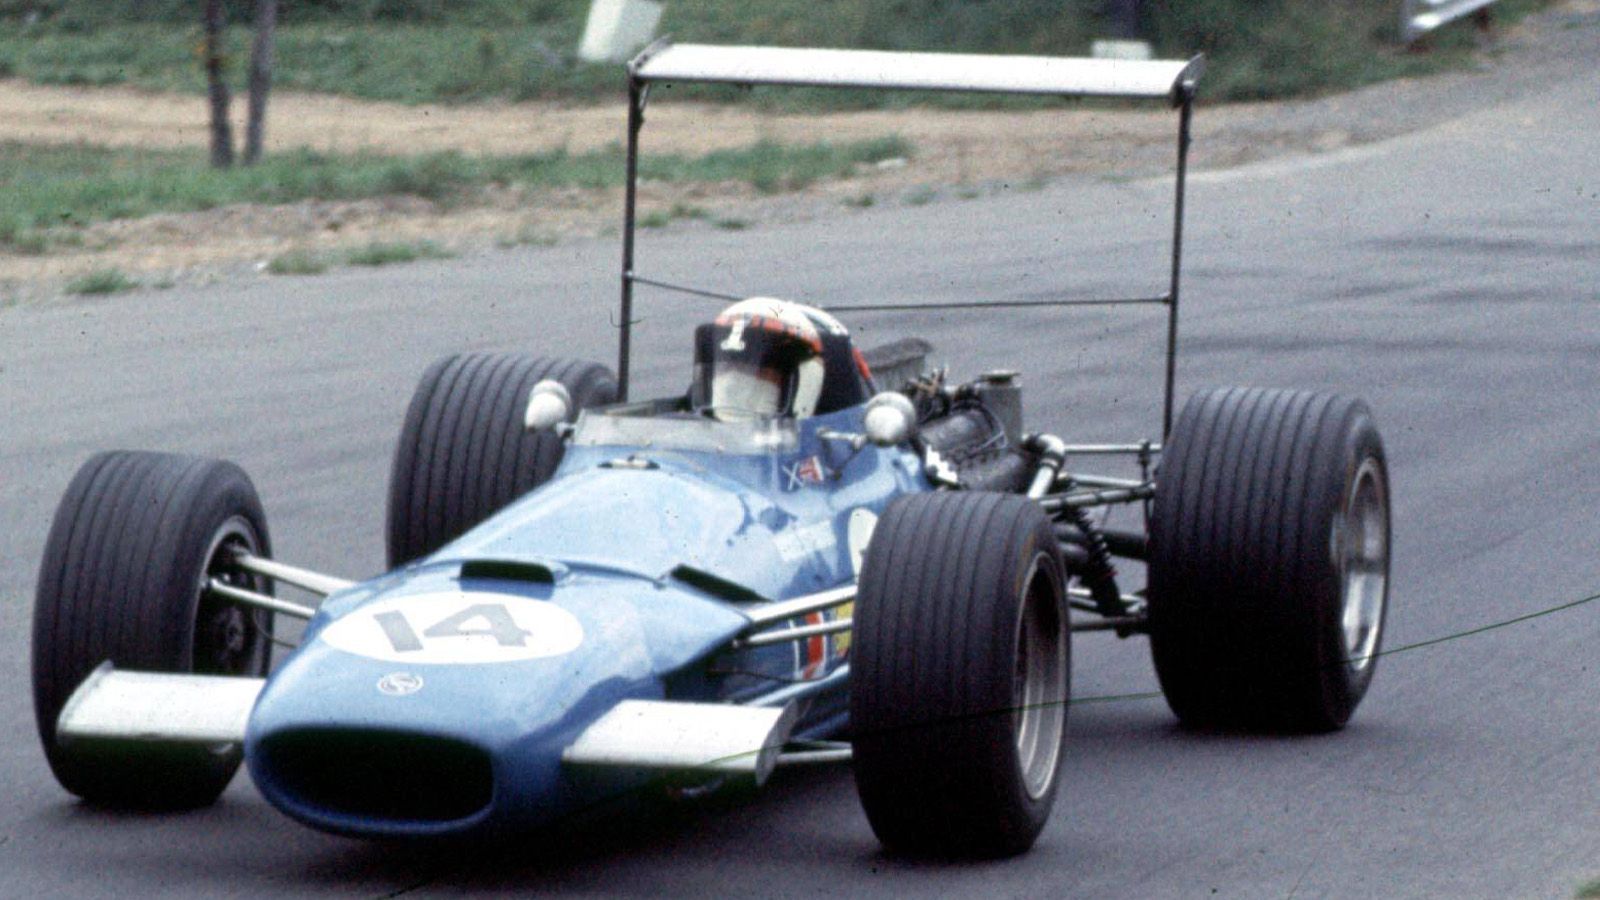 
                <strong>Matra MS10 (1968) </strong><br>
                Zum Ende des Jahrzehnts wurden erstmals Flügel an die Formel-1-Autos geschraubt. Und in den folgenden Rennen experimentierten die Konstrukteure derart fleißig, dass verrückte Konstruktionen entstanden. So wie hier am Auto von Sir Jackie Stewart im Jahr 1968 im Matra MS10 beim Großen Preis von Kanada.
              